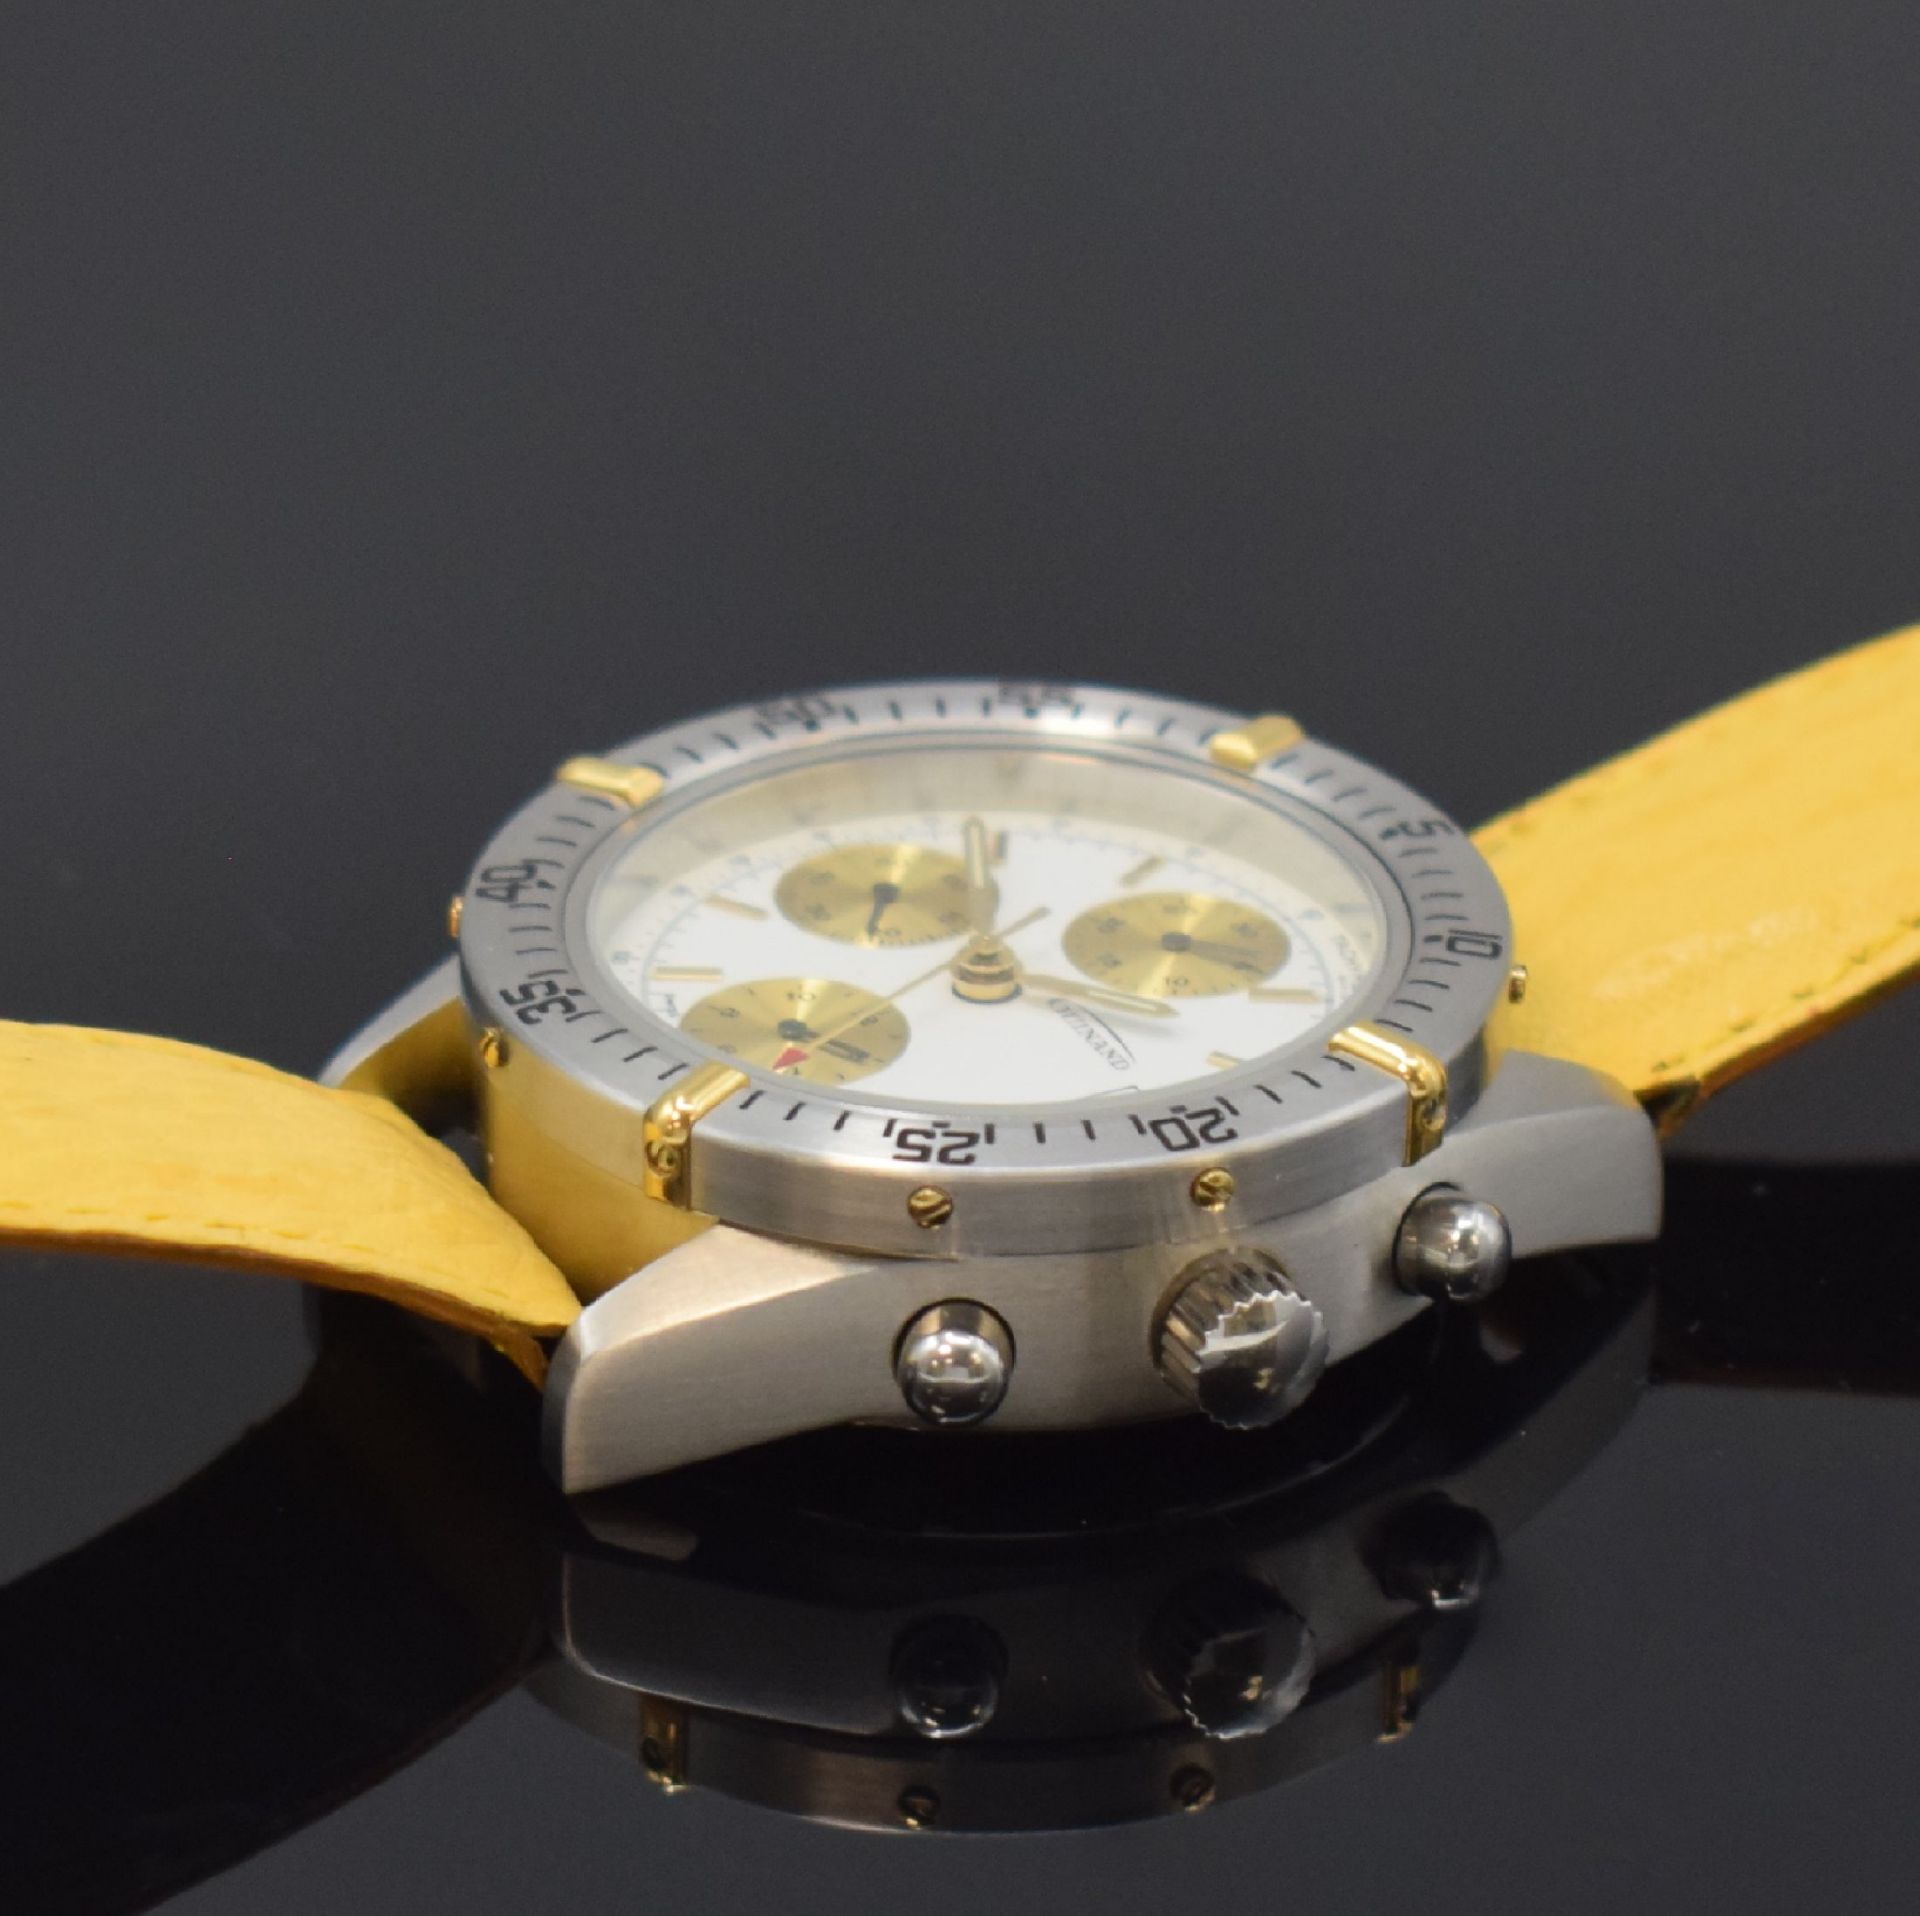 GUINAND nahezu neuwertiger Armbandchronograph, Schweiz um - Image 3 of 4